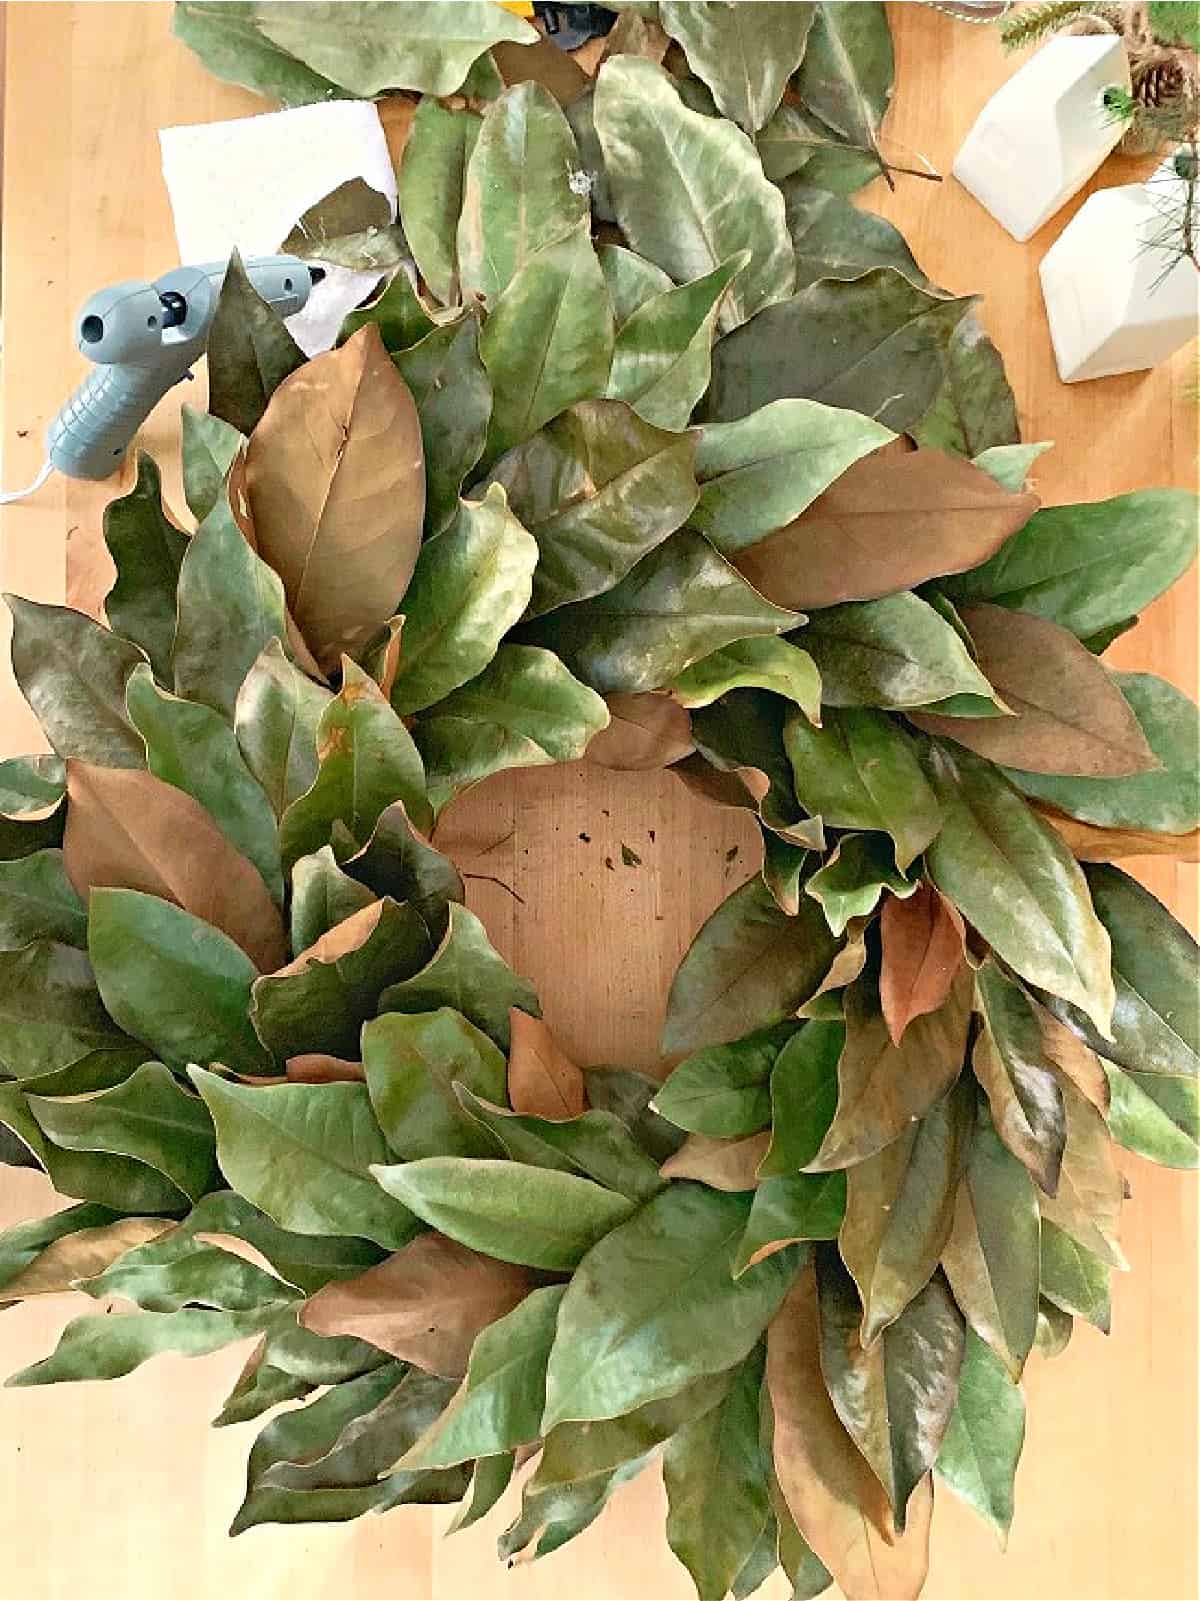 magnolia leaf wreath on table